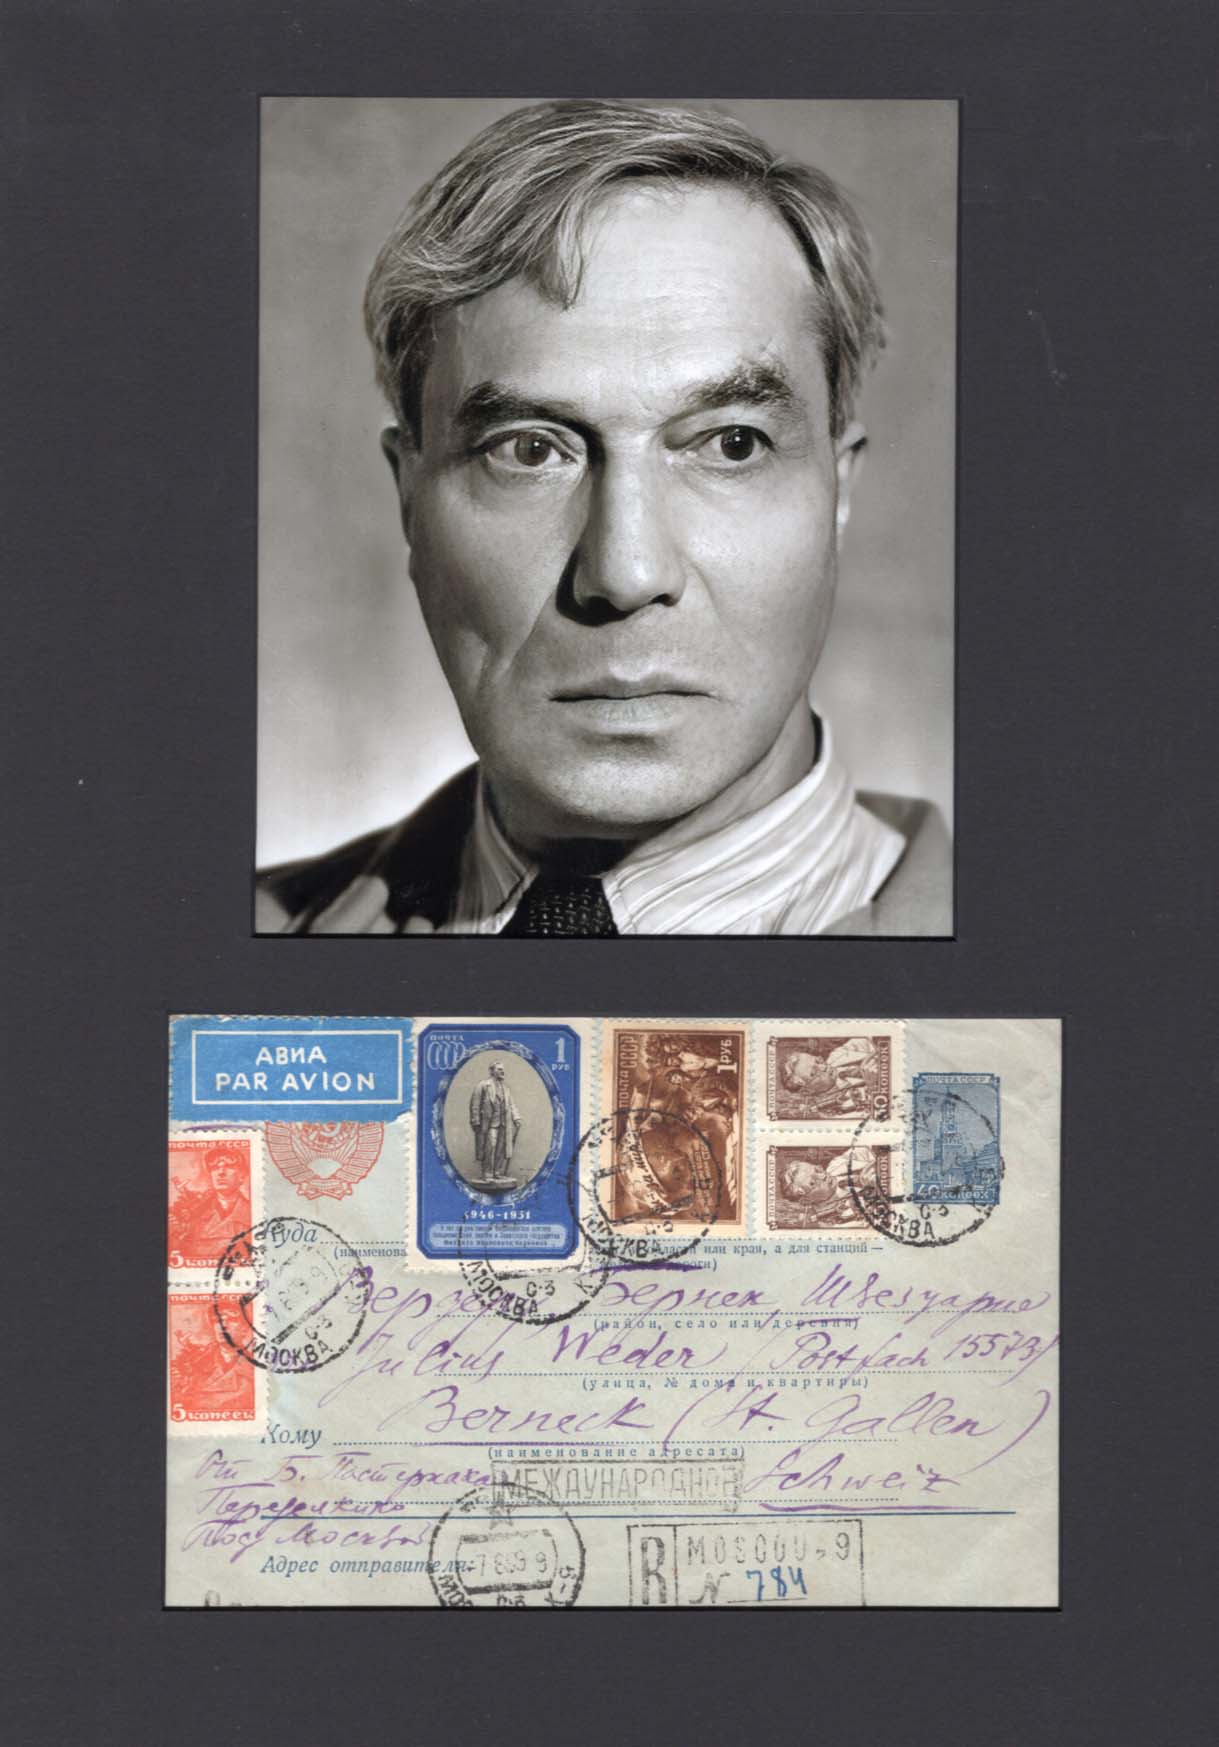 Boris Pasternak Autograph Autogramm | ID 8075134795925